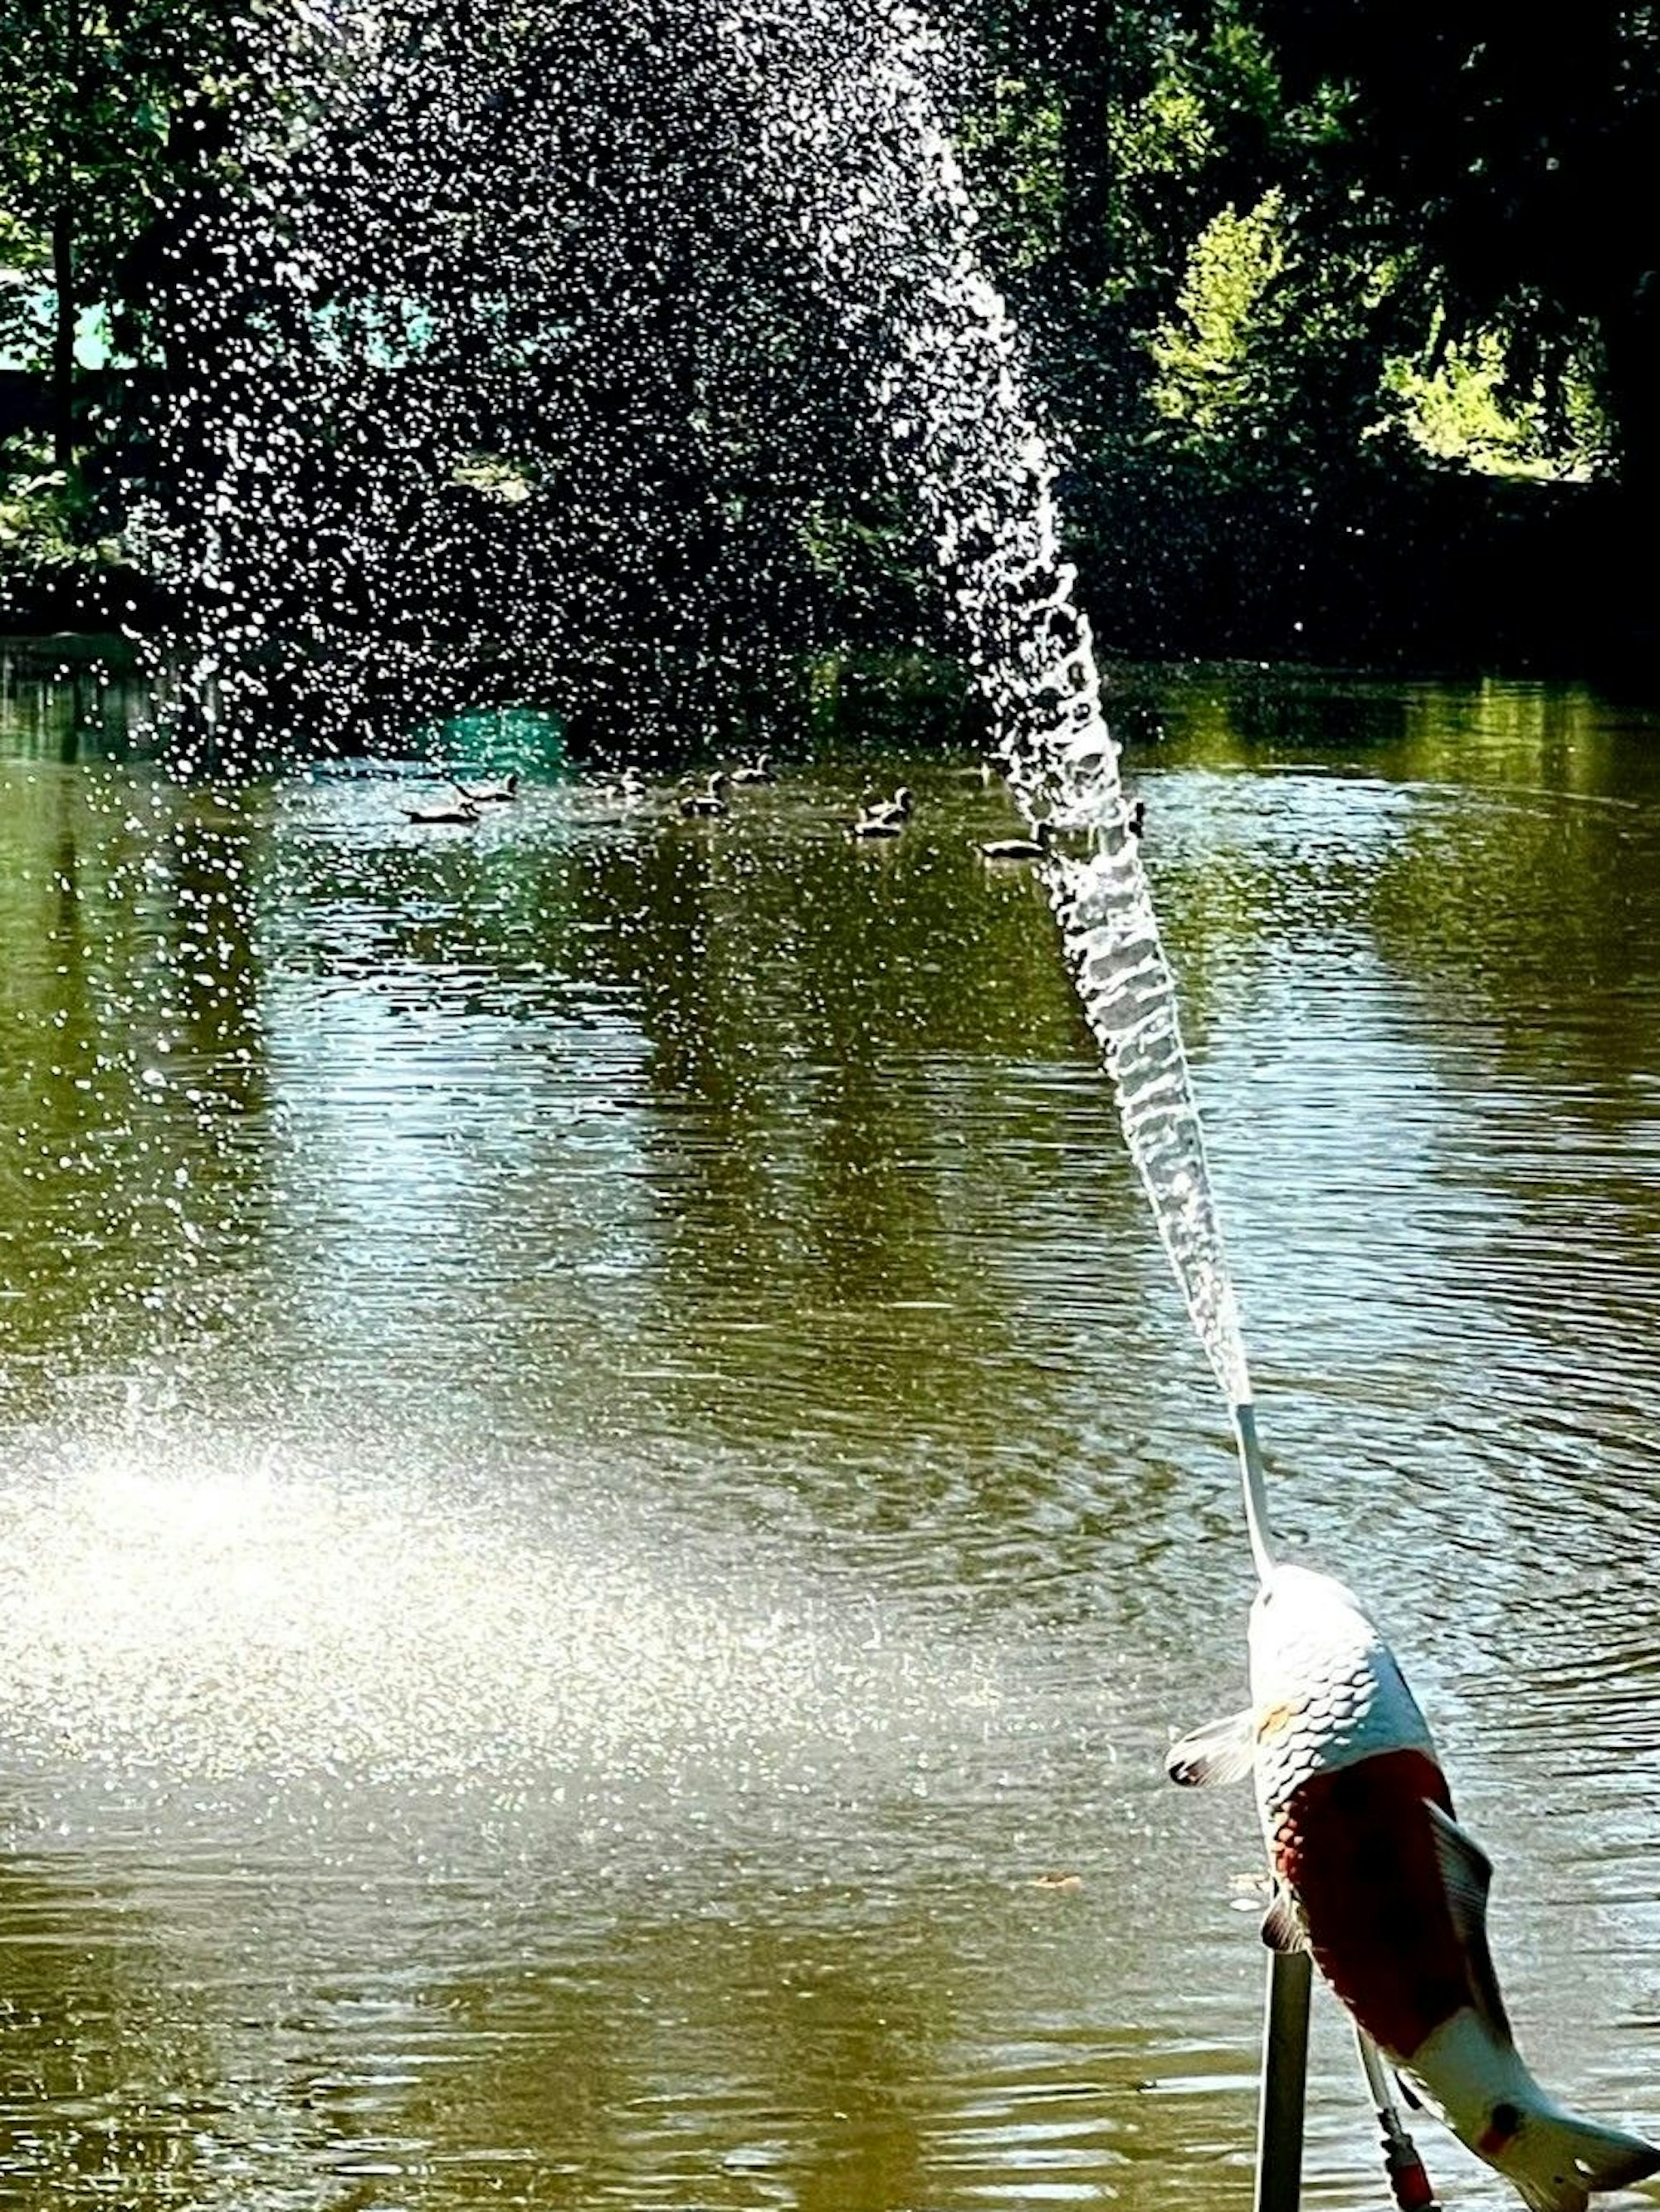 Das Bild zeigt die Skulptur eines Koifischs, aus dessen Maul ein Wasserstrahl kommt.